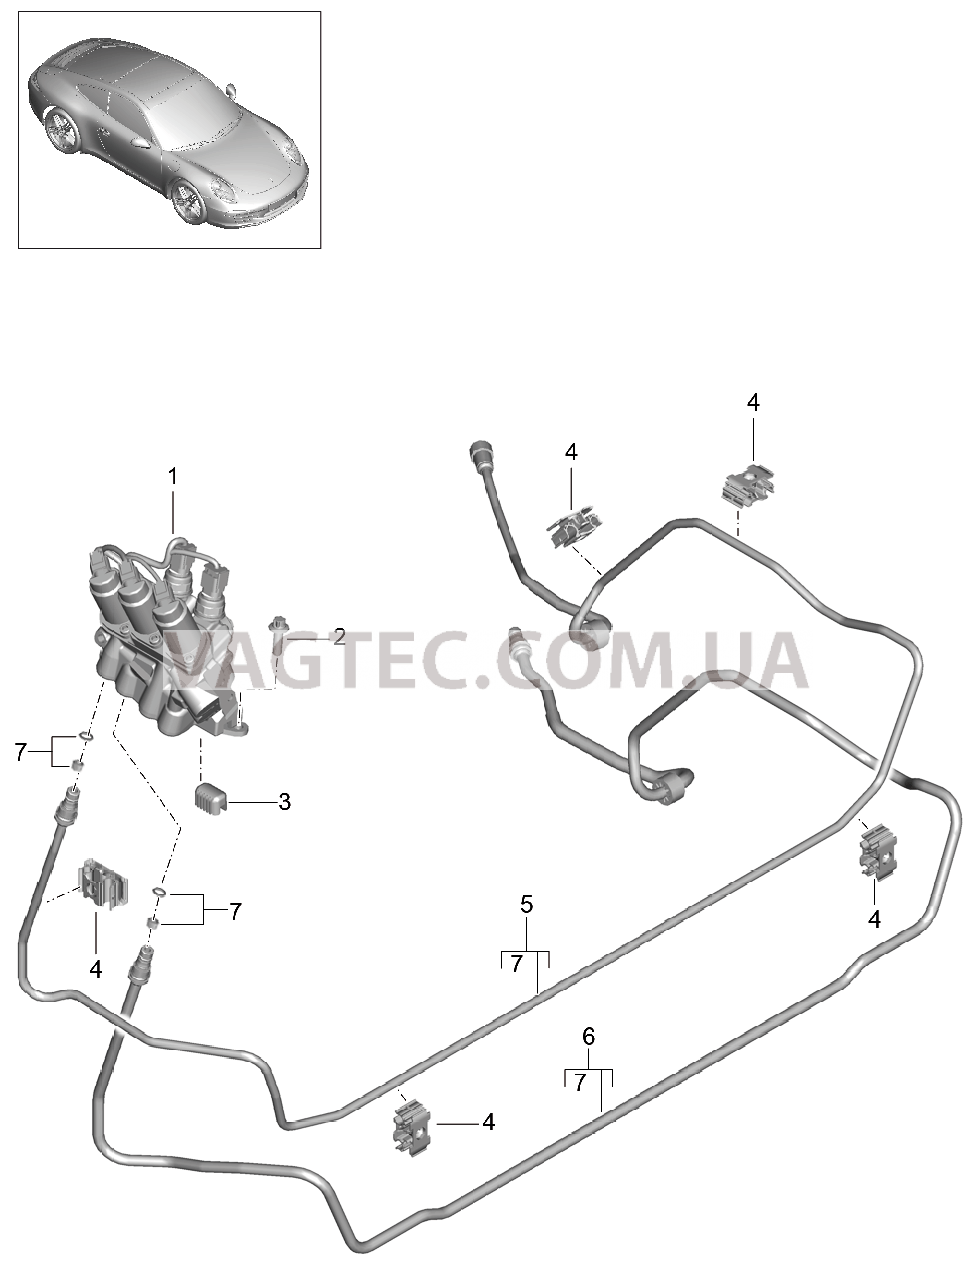 402-020 Линии, Блок клапанов, Передняя часть кузова, PDCC
						
						I031/352 для PORSCHE 911.Carrera 2012-2016